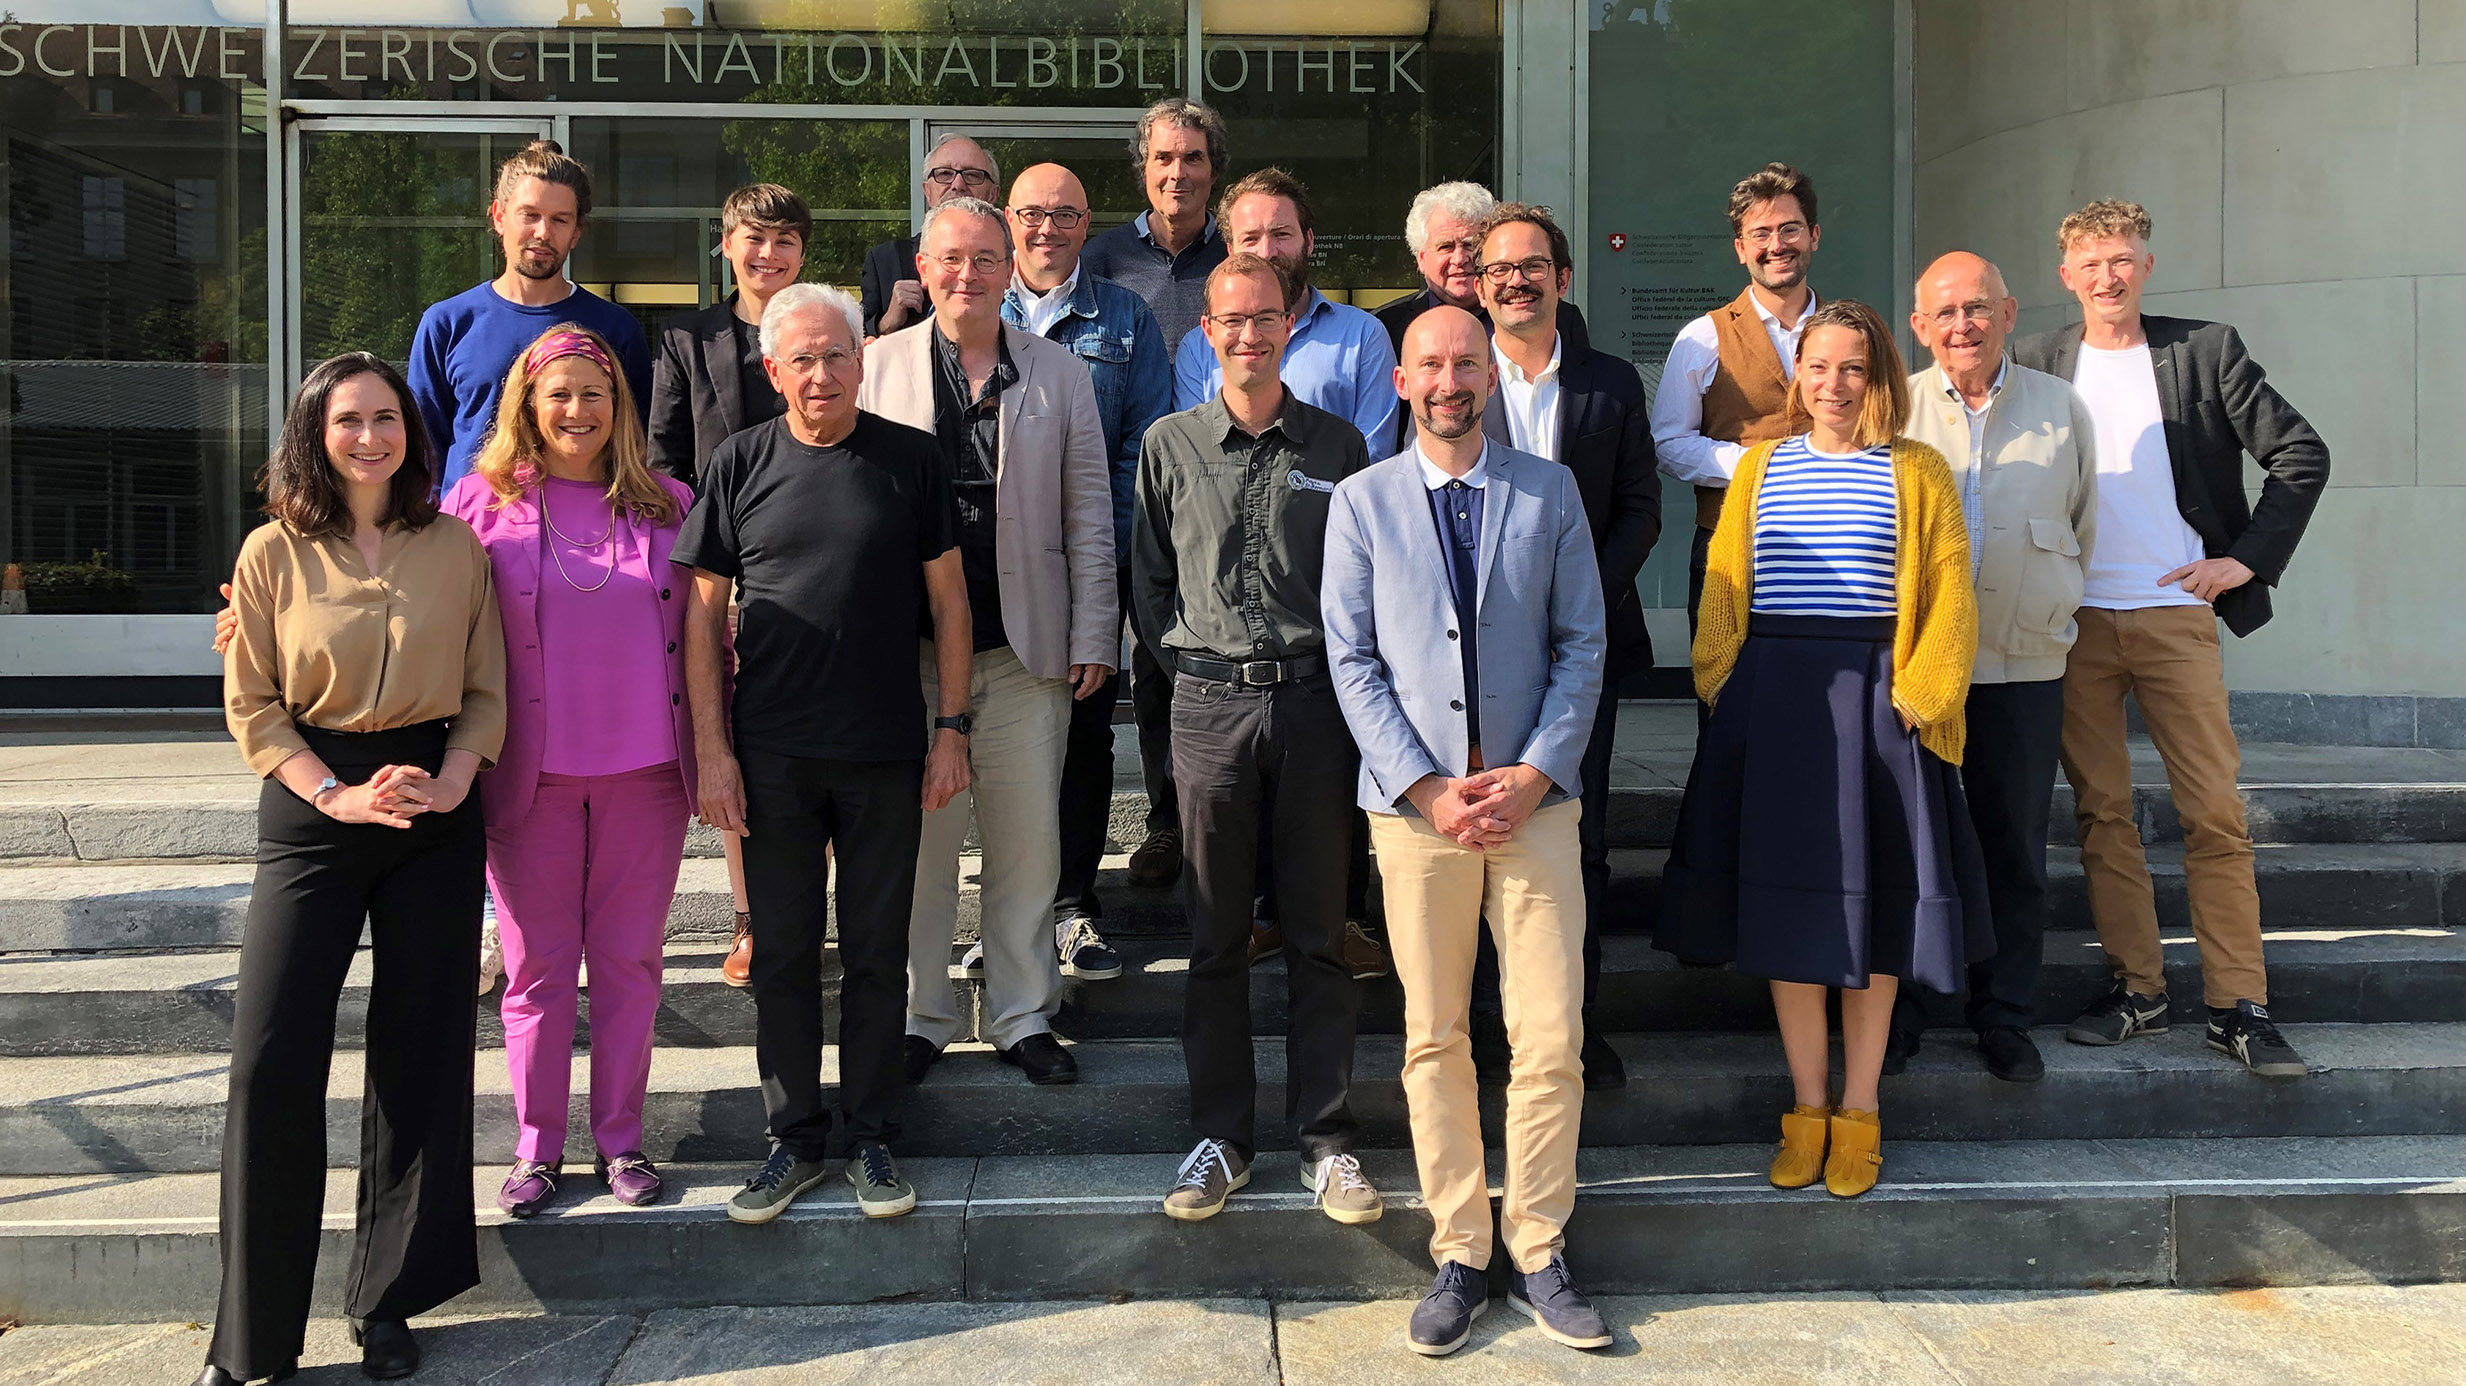 Svizzera: l’Ufficio Federale della Cultura ospita una riunione di coordinamento con i manager degli Itinerari Culturali